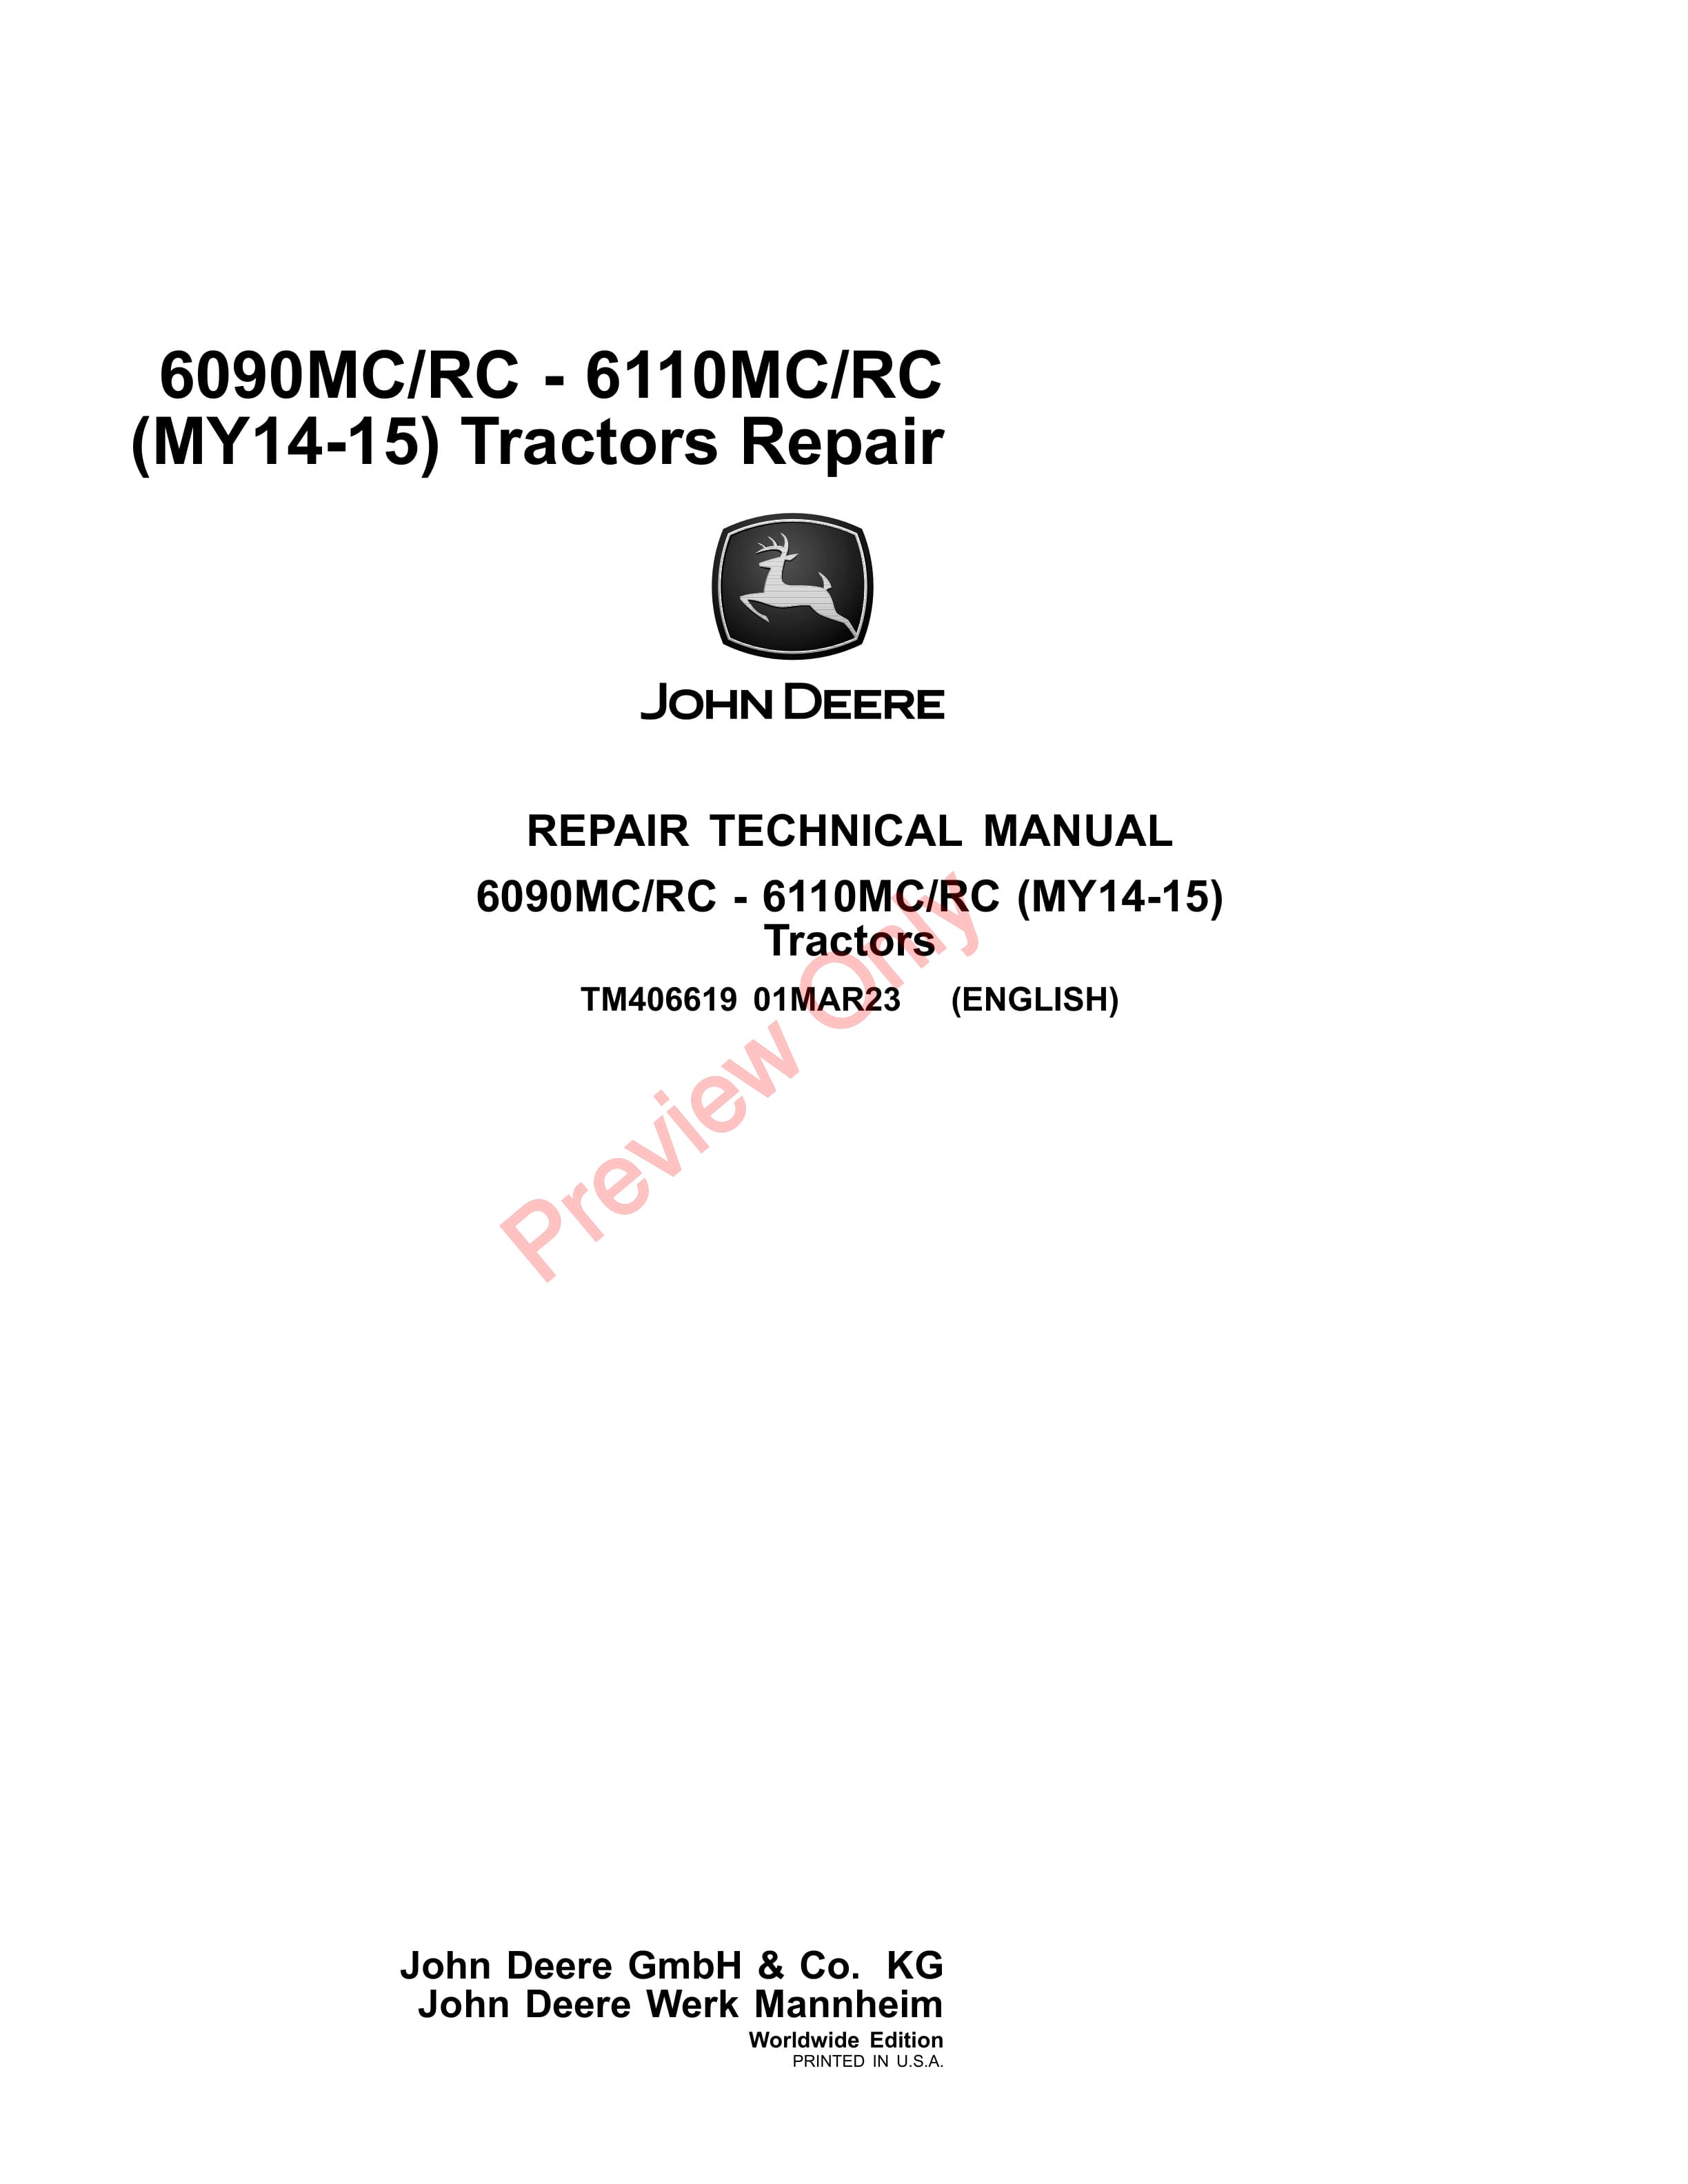 John Deere 6090MCRC 6110MCRC MY14 15 Tractors Repair Technical Manual TM406619 01MAR23 1